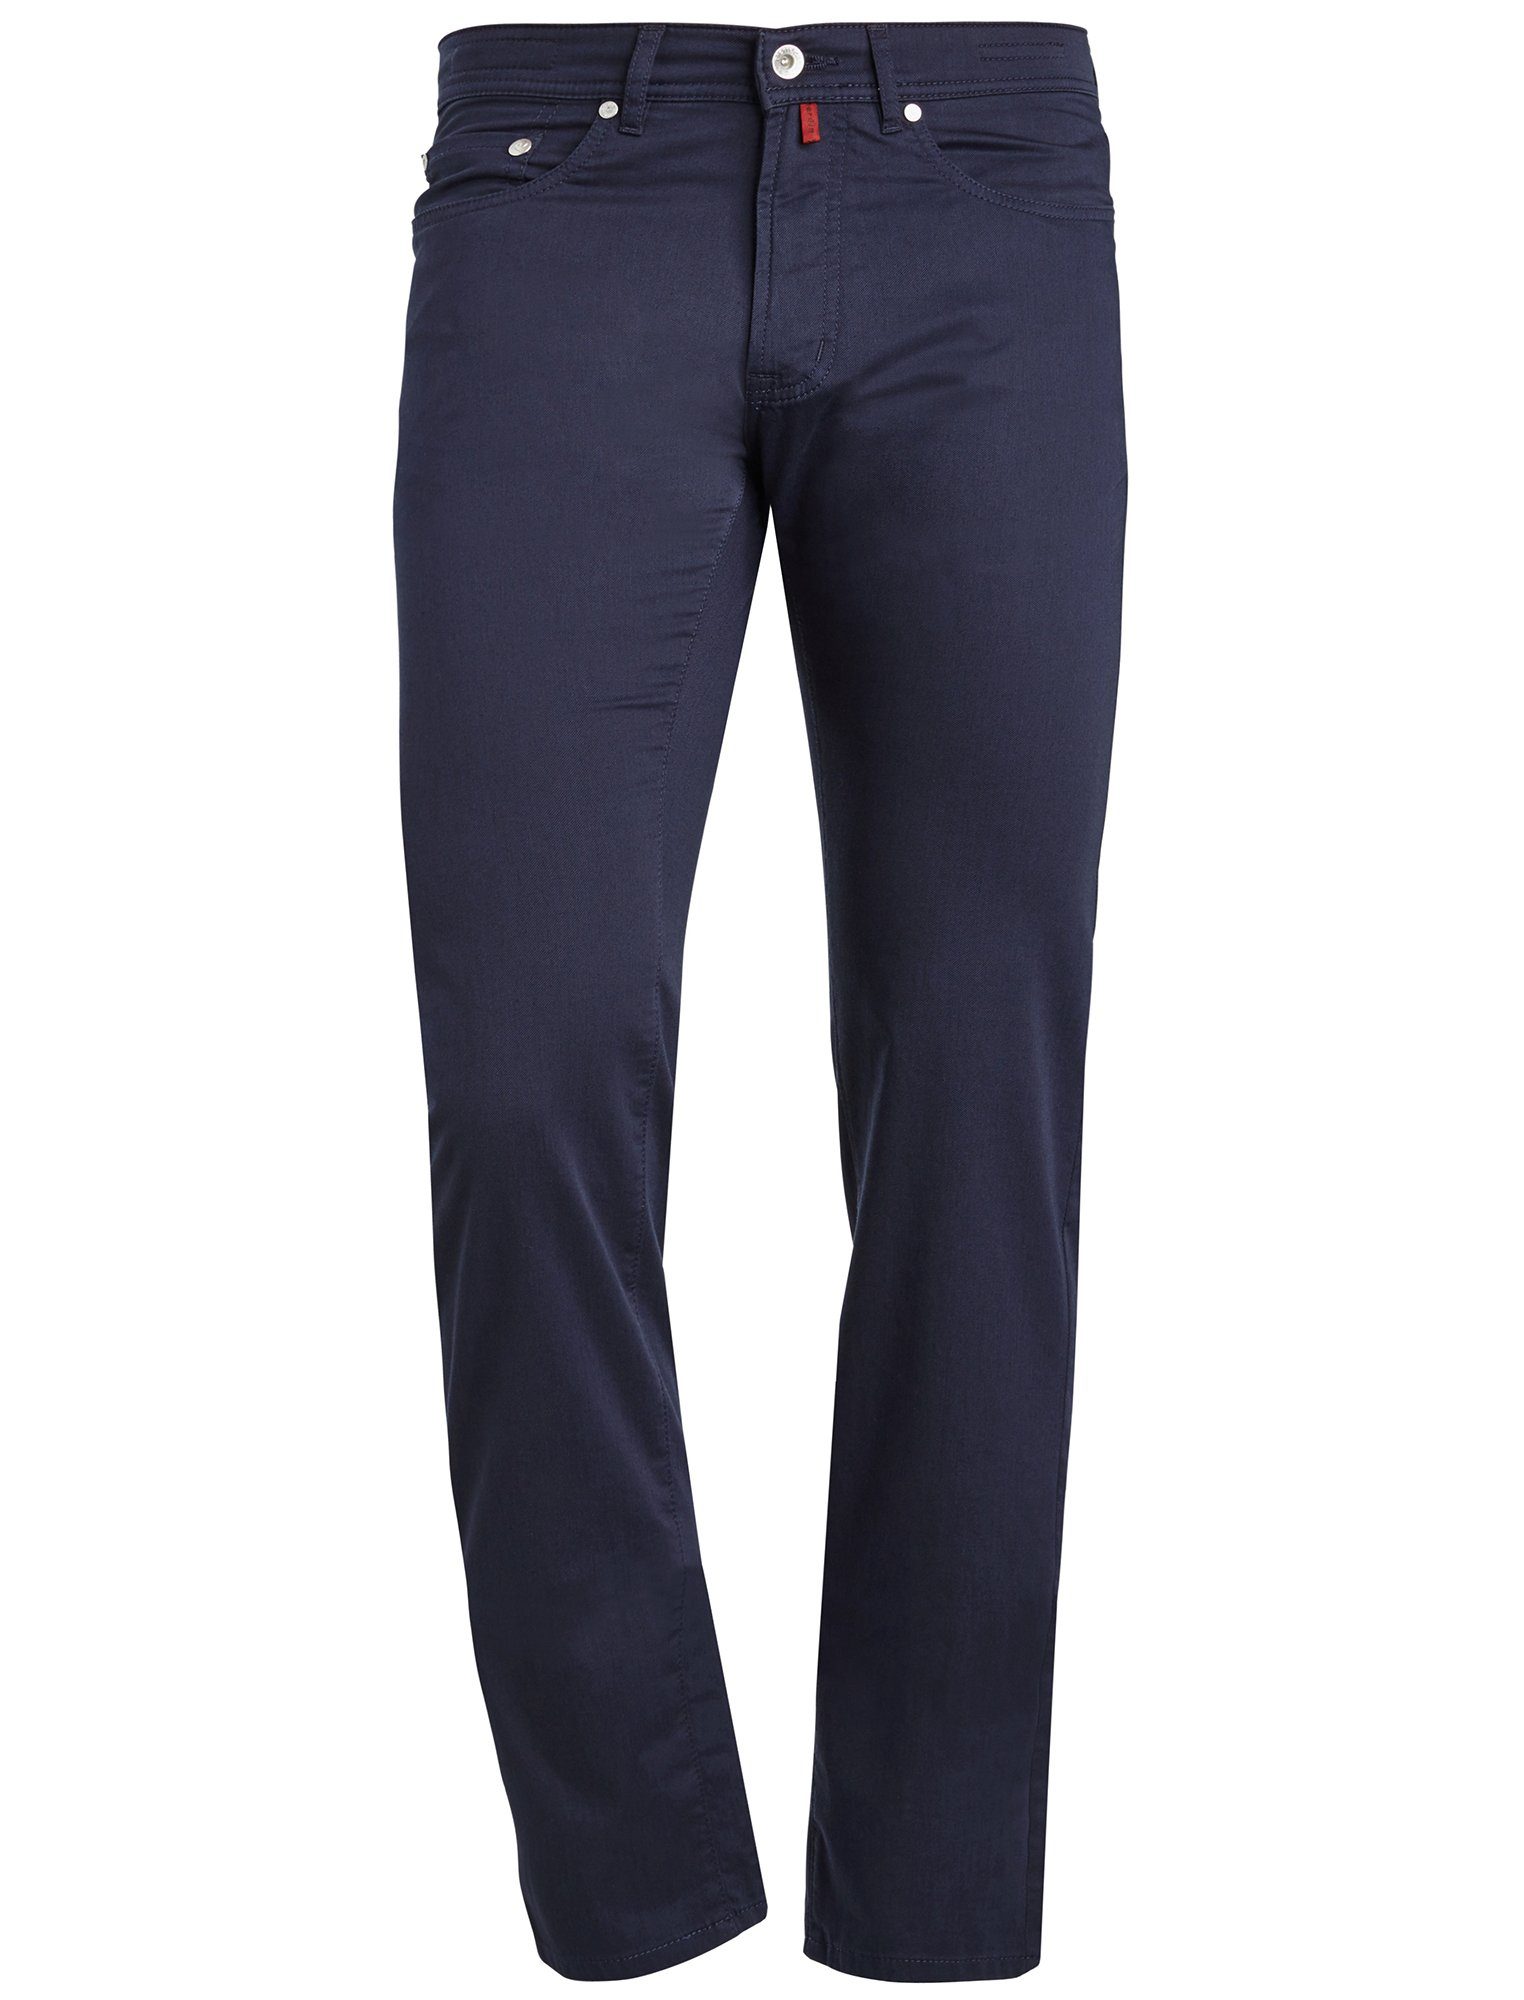 Pierre Cardin 5-Pocket-Jeans PIERRE CARDIN LYON marine blue 3091 2280.69